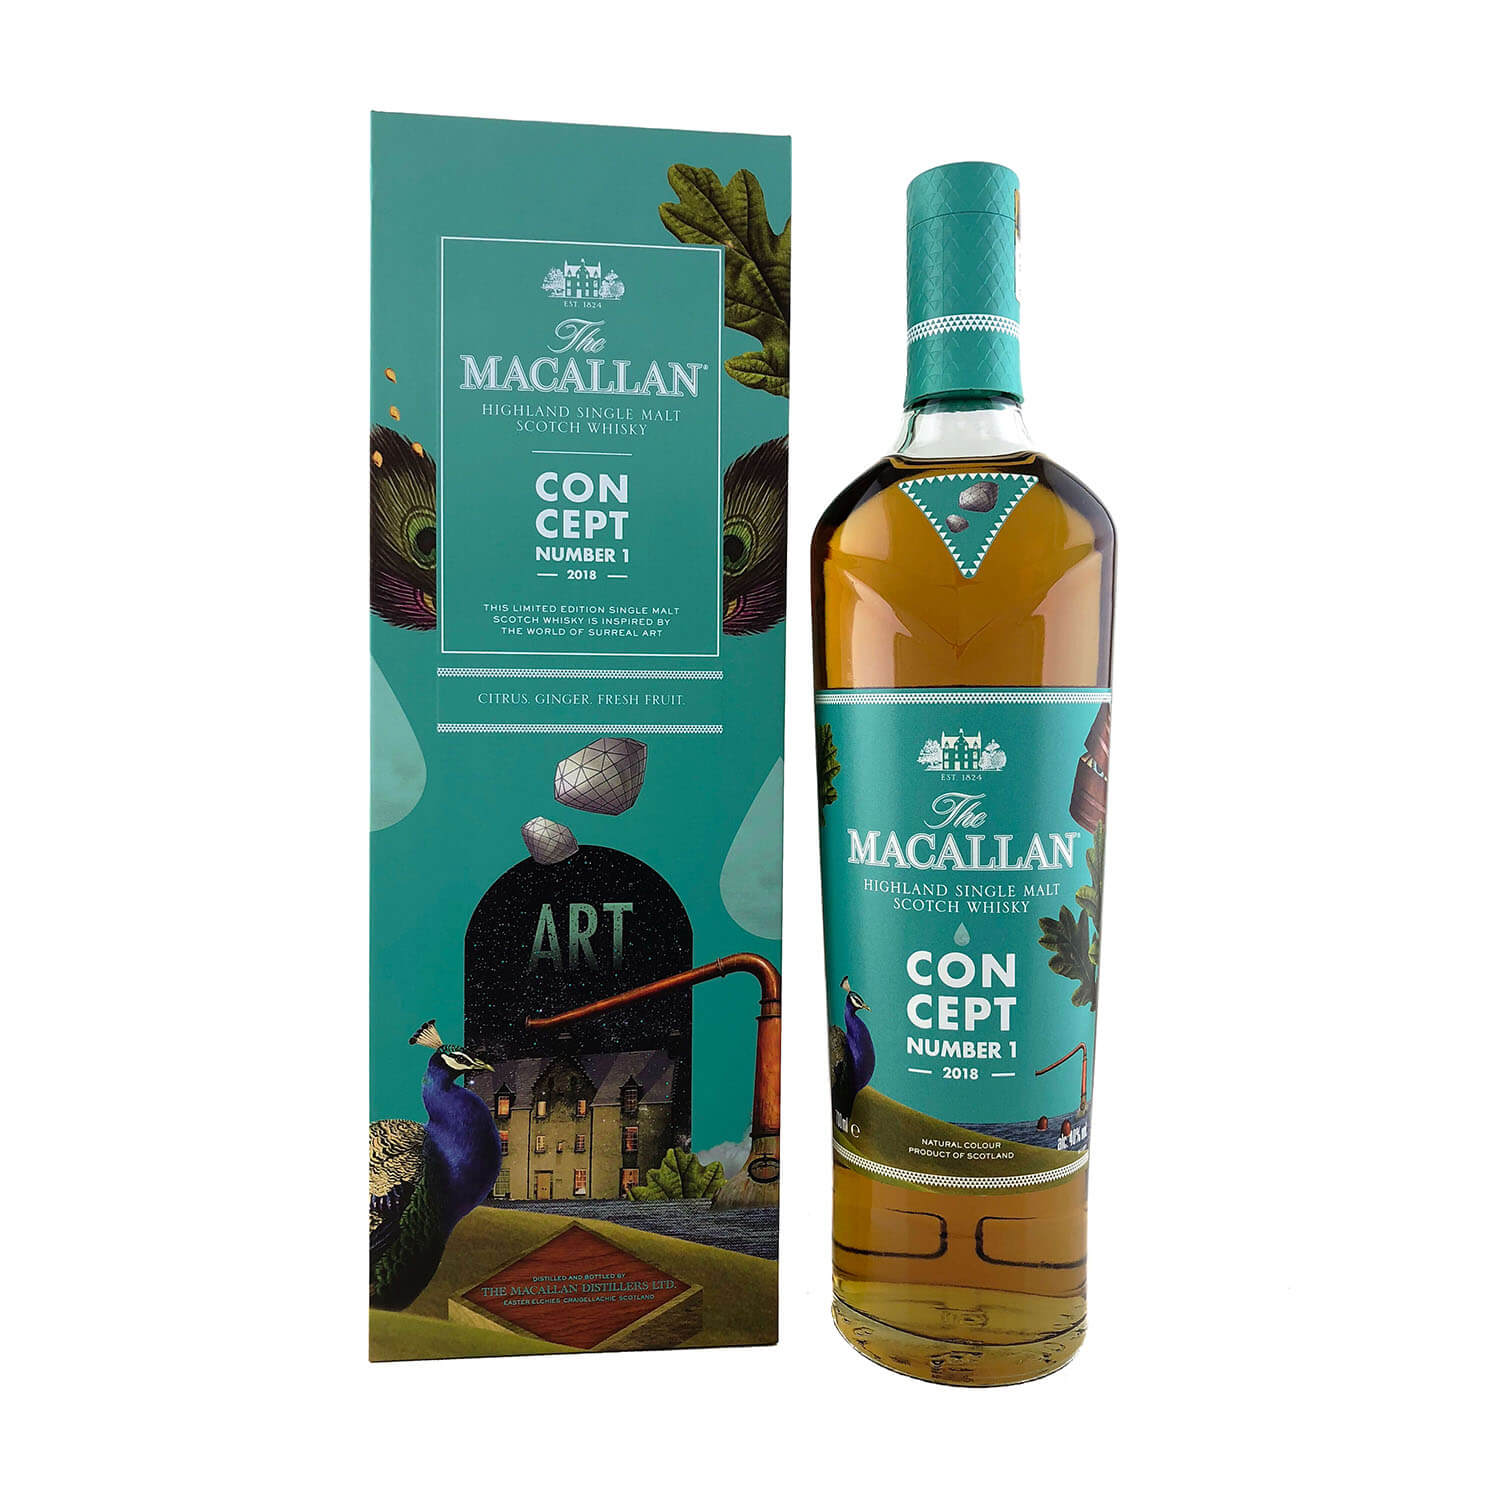 The Macallan Concept No 1 Single Malt Scotch Whisky 700ml 40